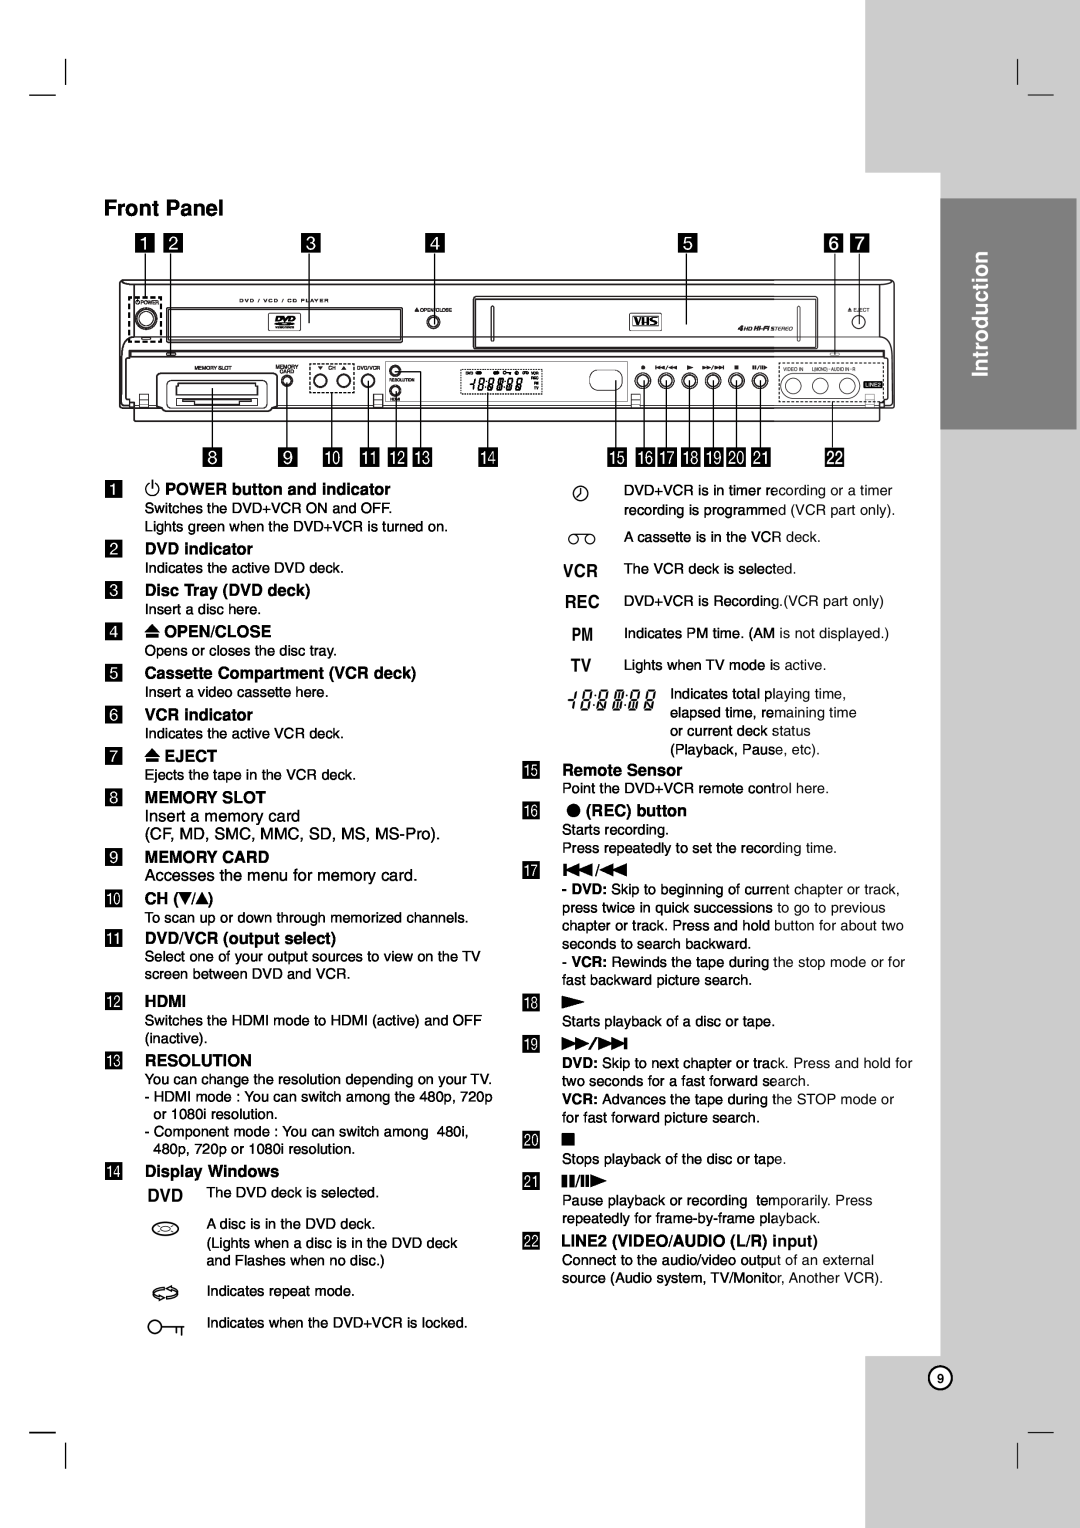 LG Electronics LDX-514 owner manual Front Panel, h i j k lm n, o pqrstu, q ./m, u X/C, Introduction 